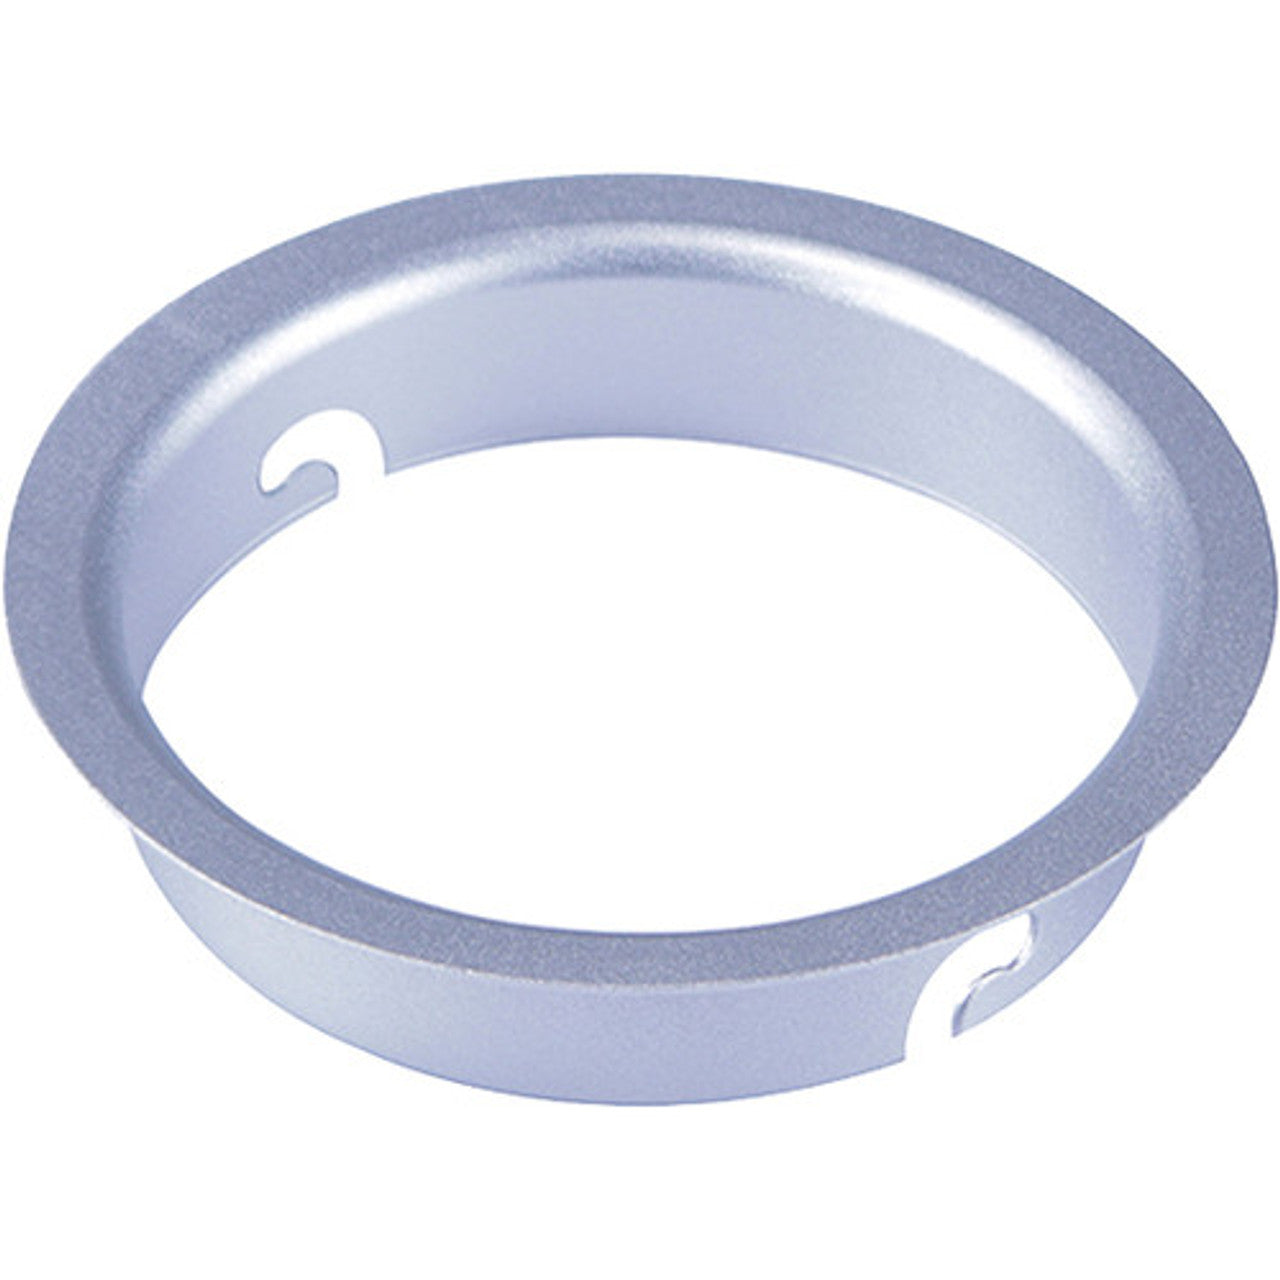 Phottix Raja Inner Speed Ring for Elinchrom 閃燈接環